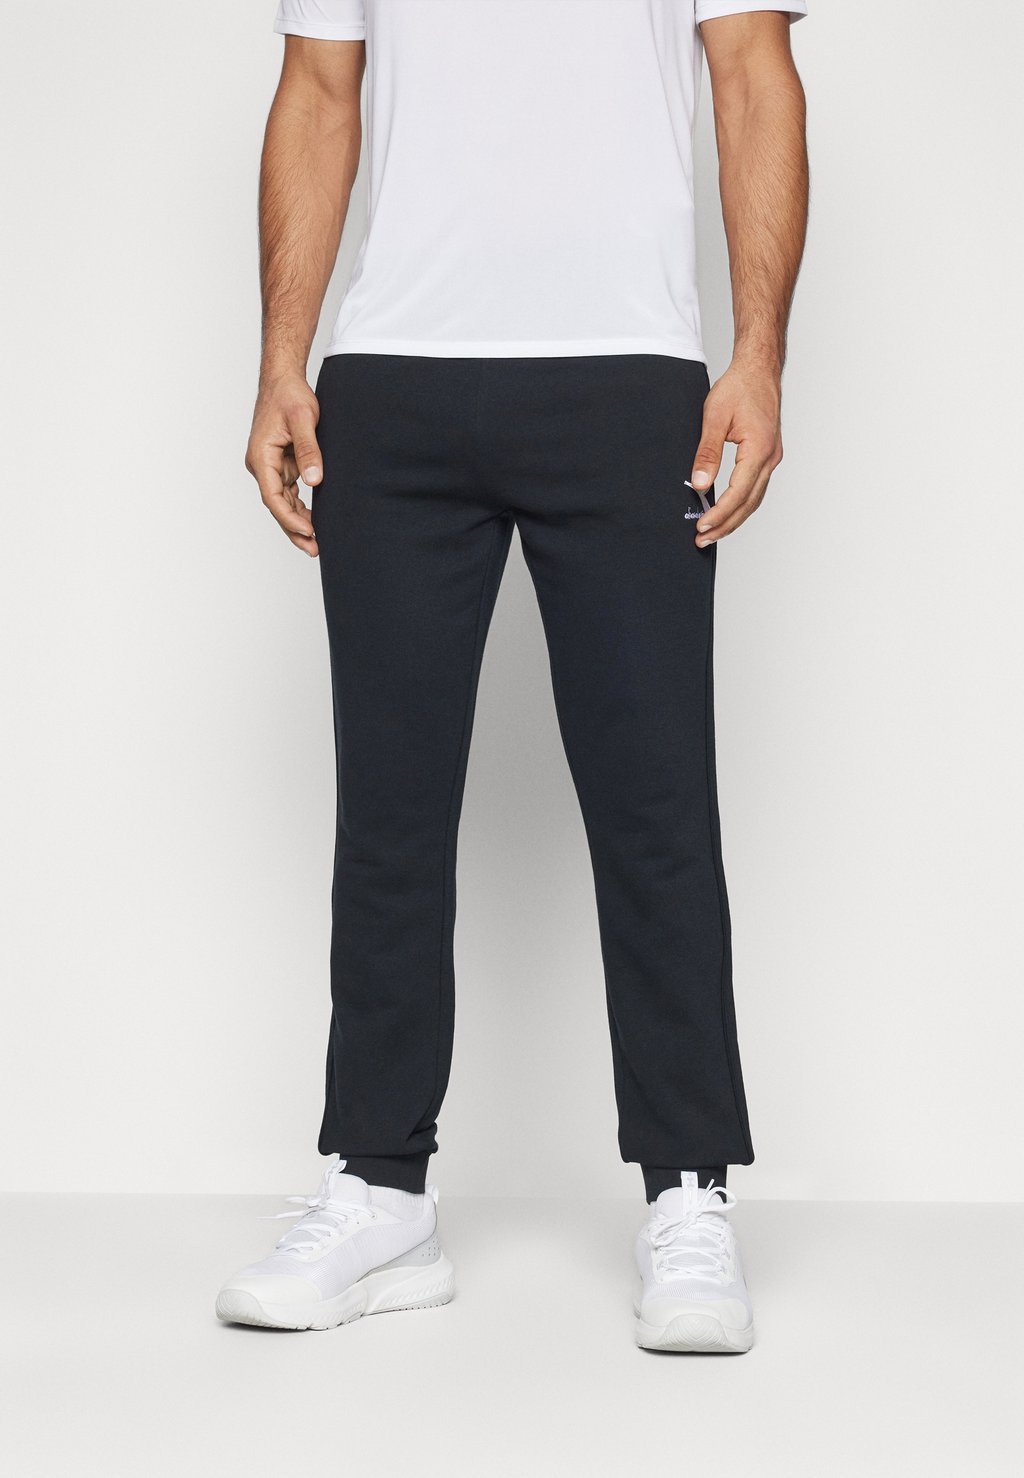 Спортивные брюки Pants Cuff Core Diadora, черный